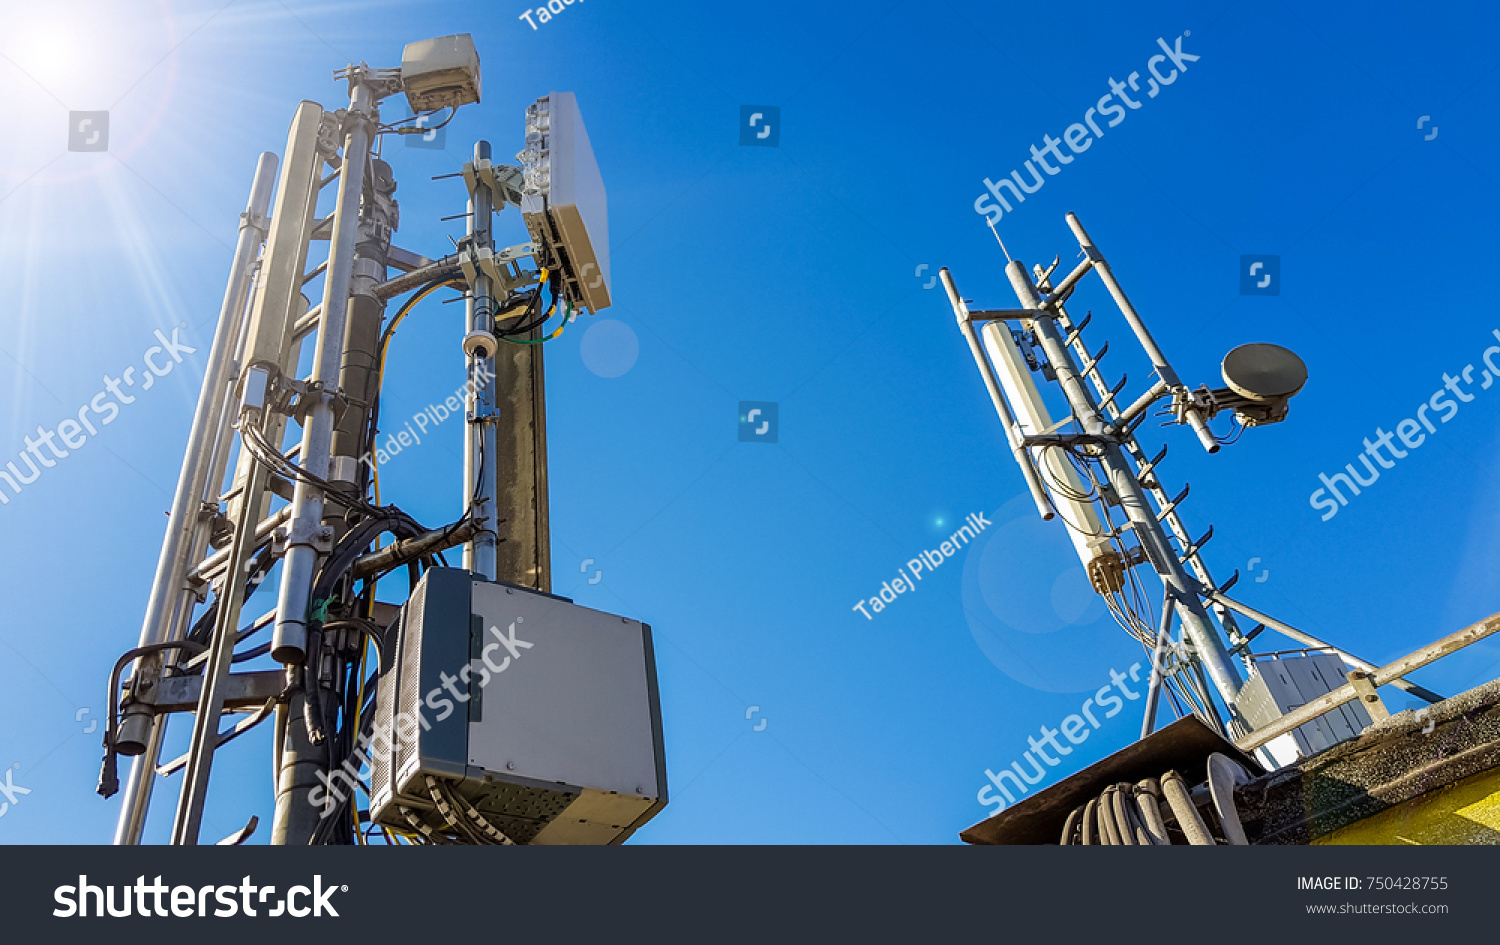 5G smart mobile telephone radio network antenna base station on the telecommunication mast radiating signal #750428755